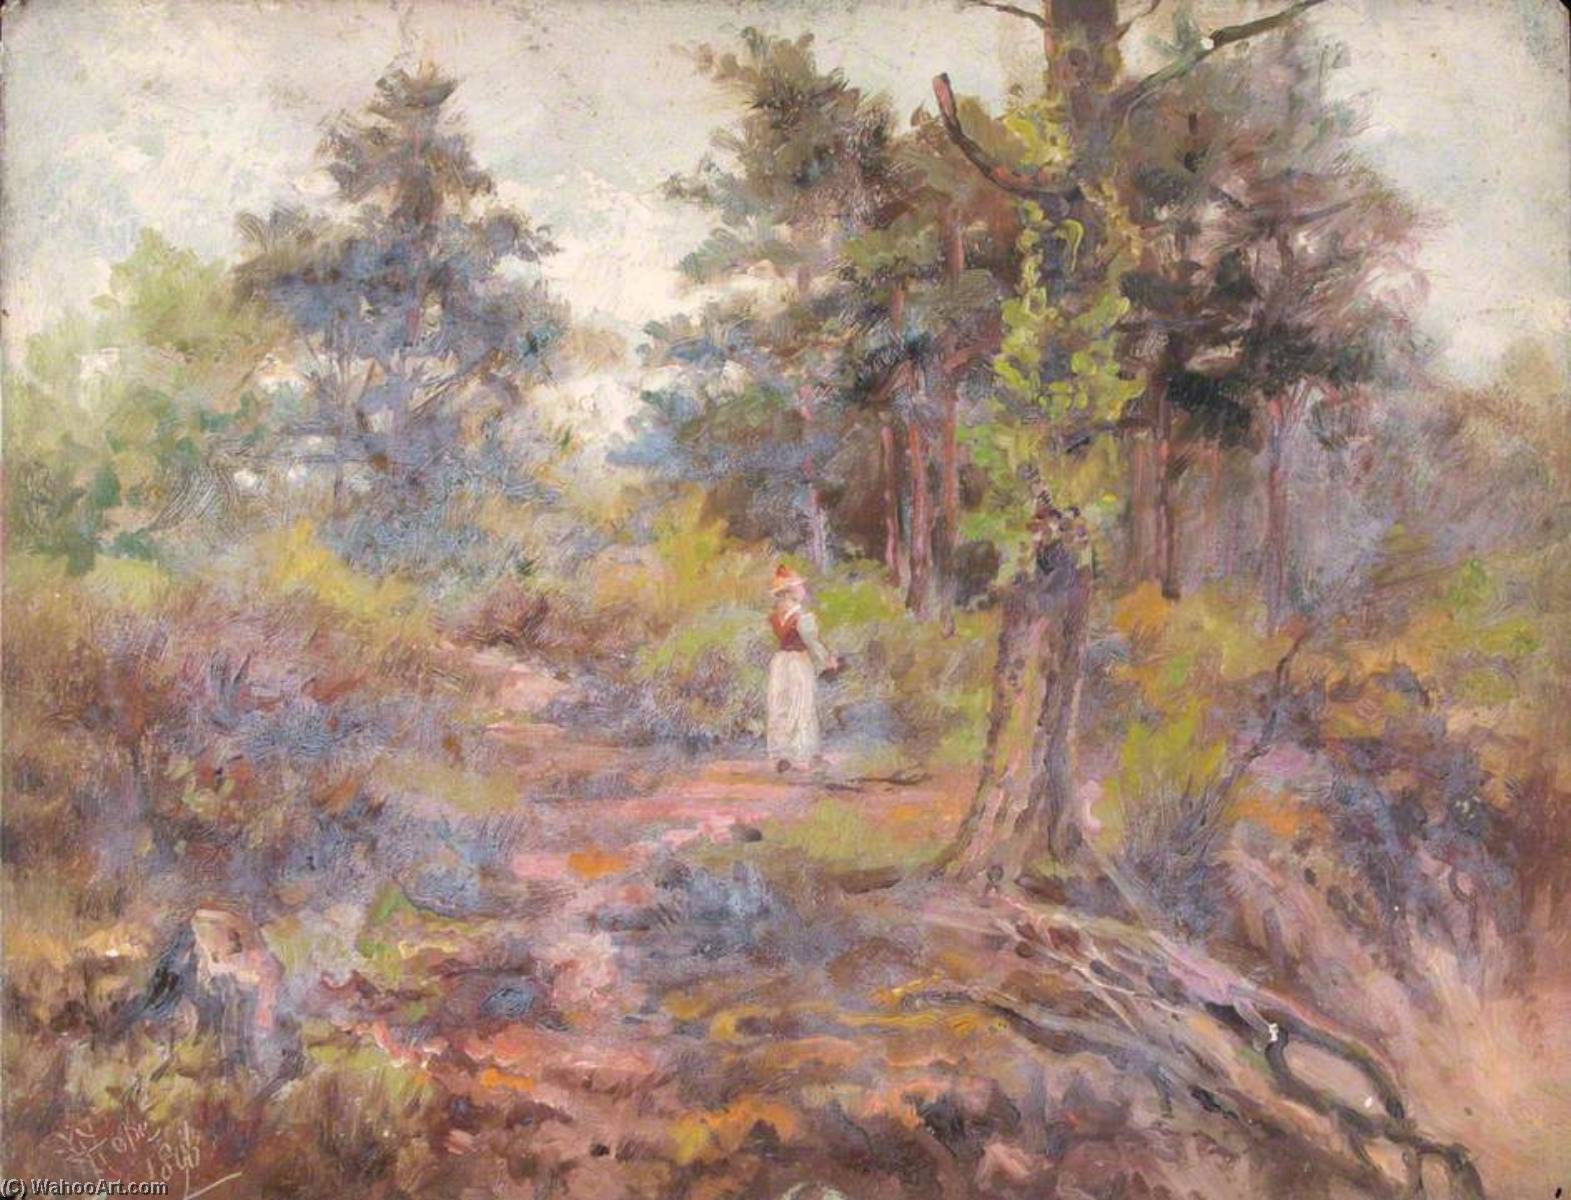 Получить Репродукции Картин Top of the Pit, Croham Hurst, Croydon, Surrey, 1896 по William Henry Hope (1835-1917) | ArtsDot.com